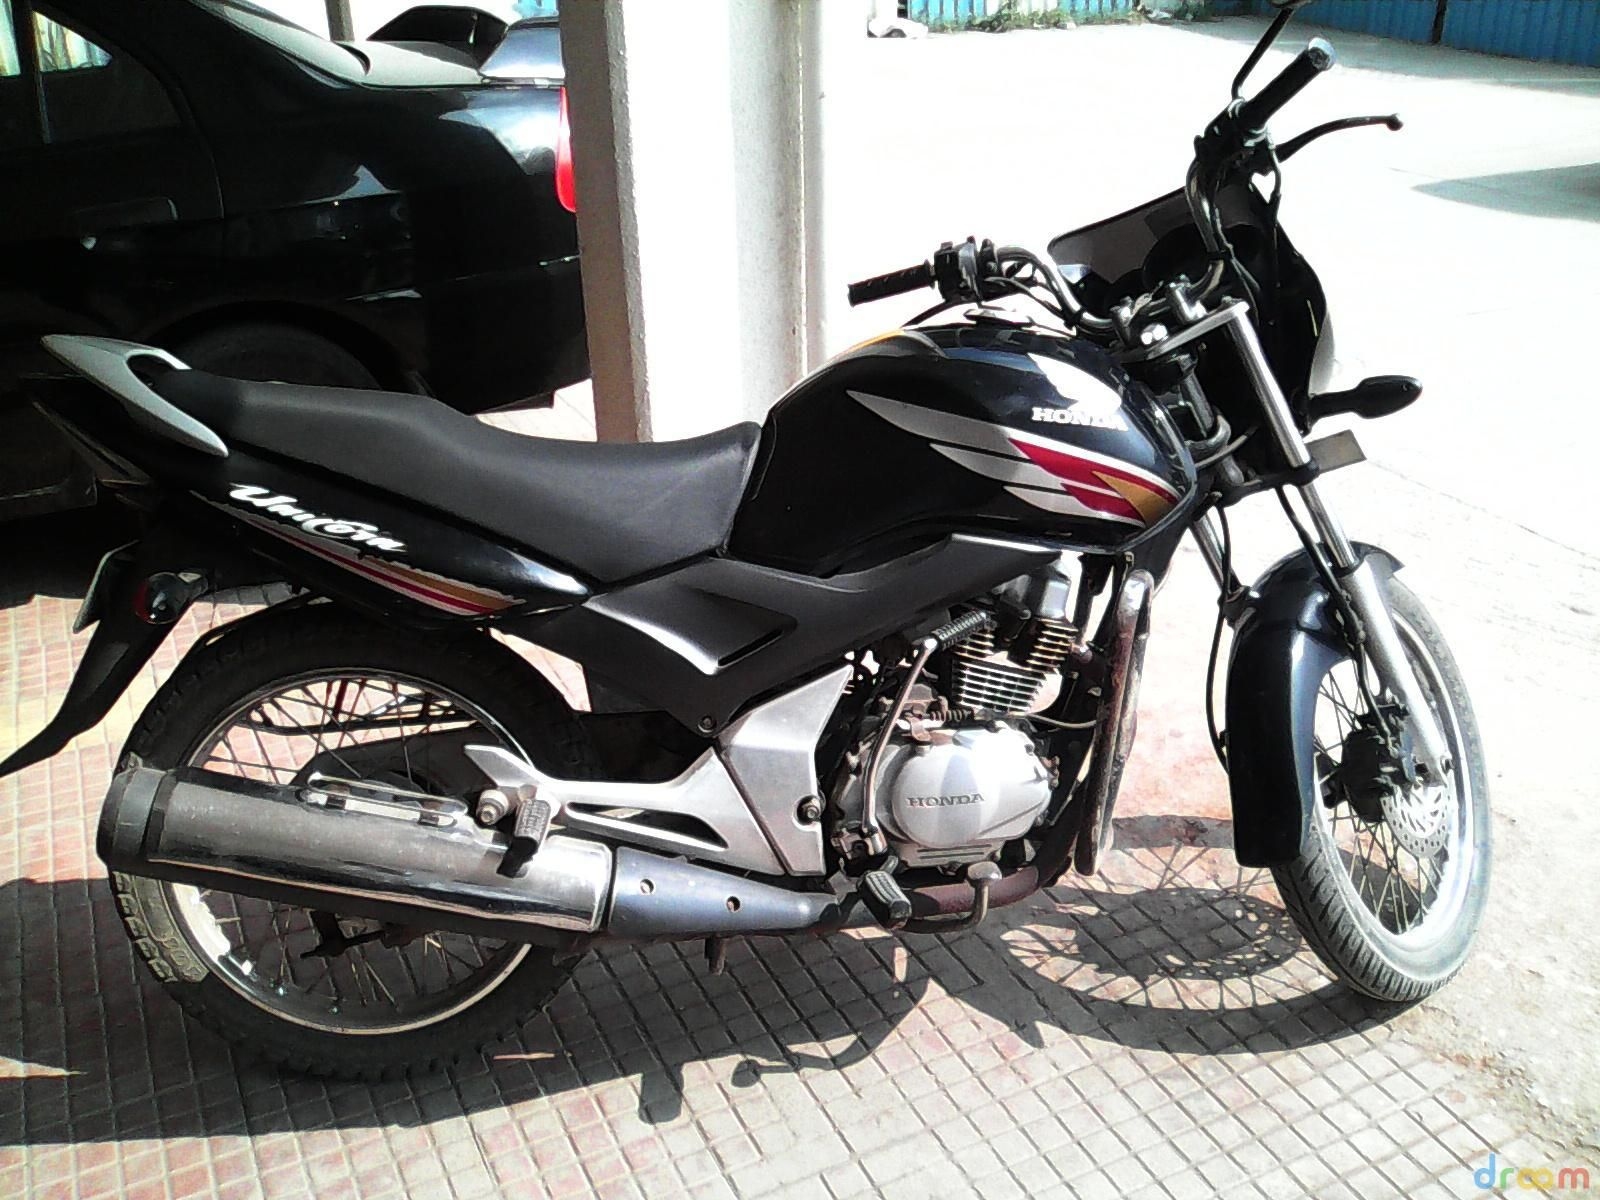 Honda Cb Unicorn 150 Bike For Sale In Pune Id 1415435660 Droom